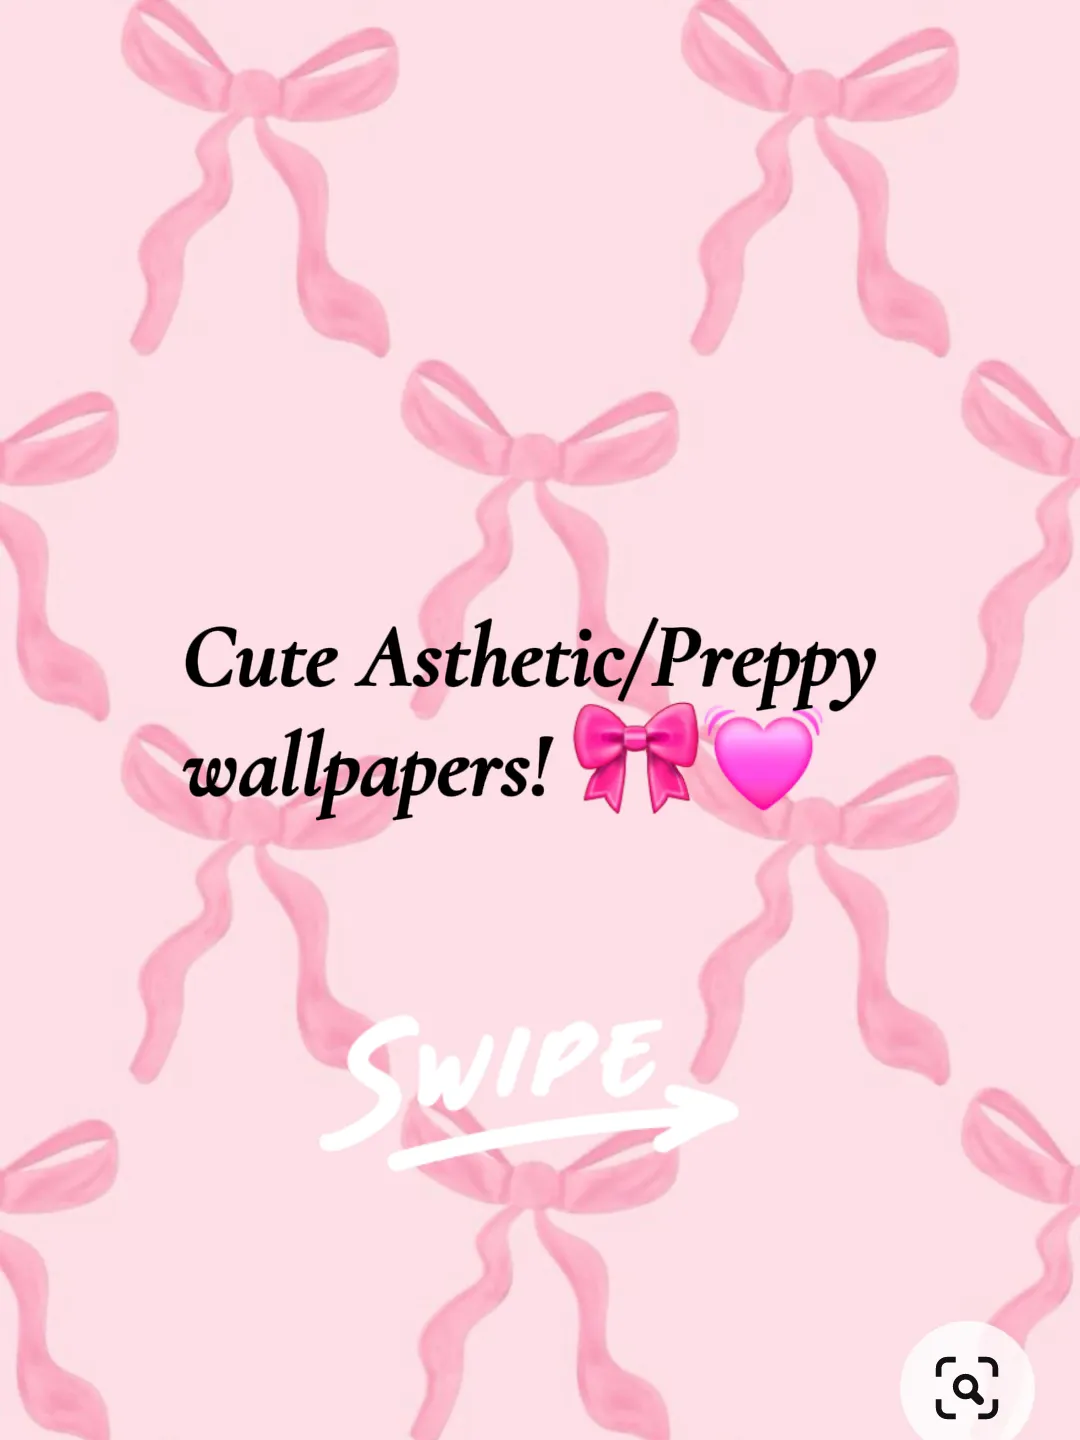 Cute Preppy Wallpaper - Lemon8 Search